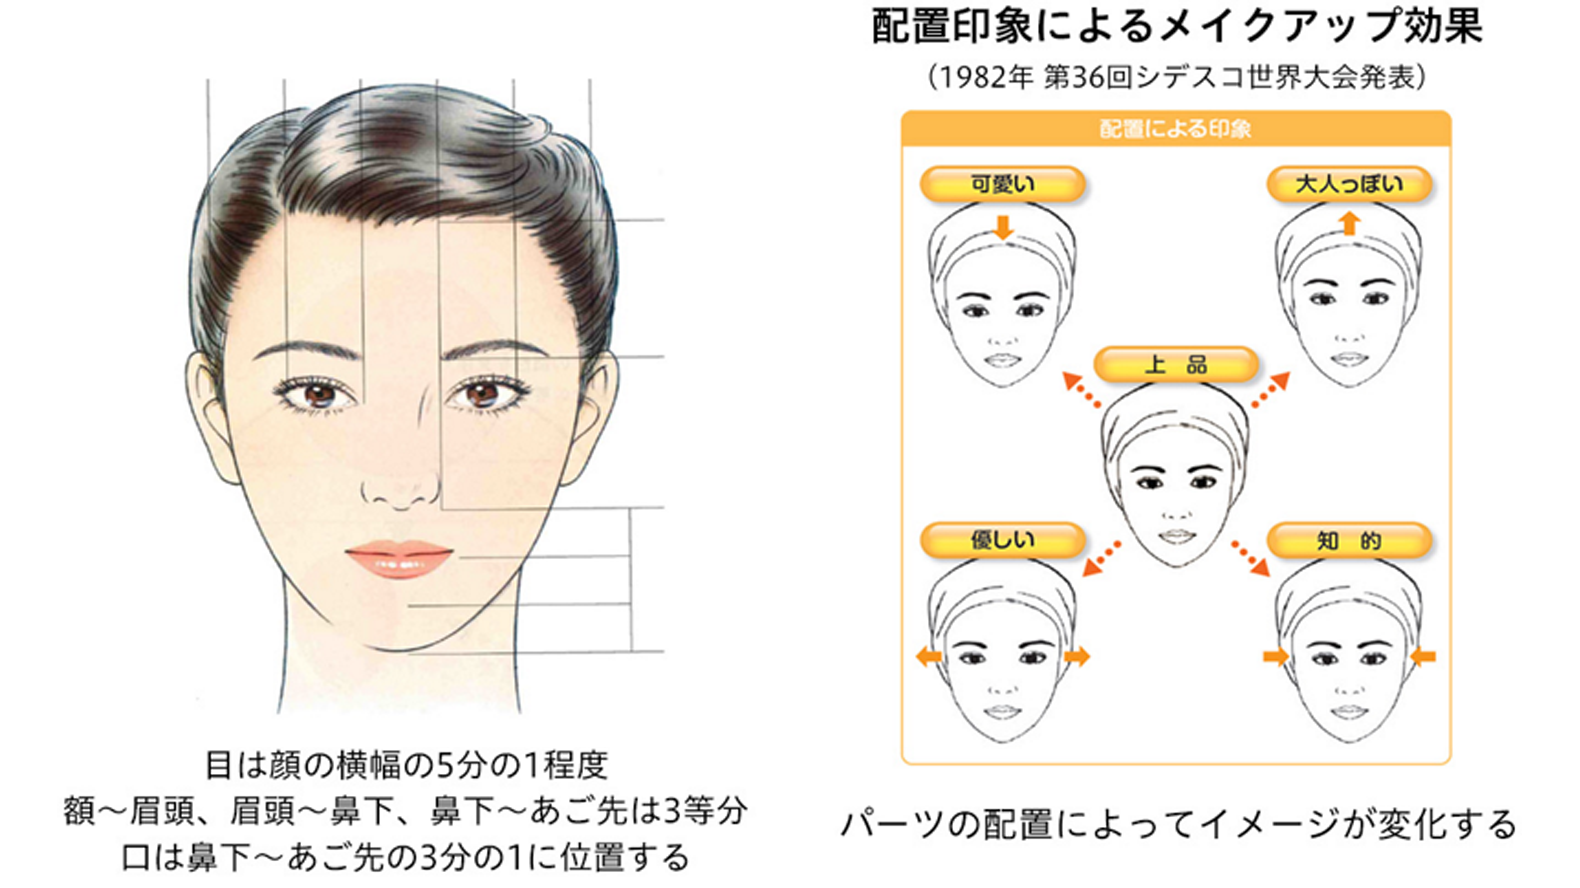 顔の特徴を解析 個性を生かしたメイクアップ提案へ Article わたしたちの大切にしていること Kao Beauty Brands